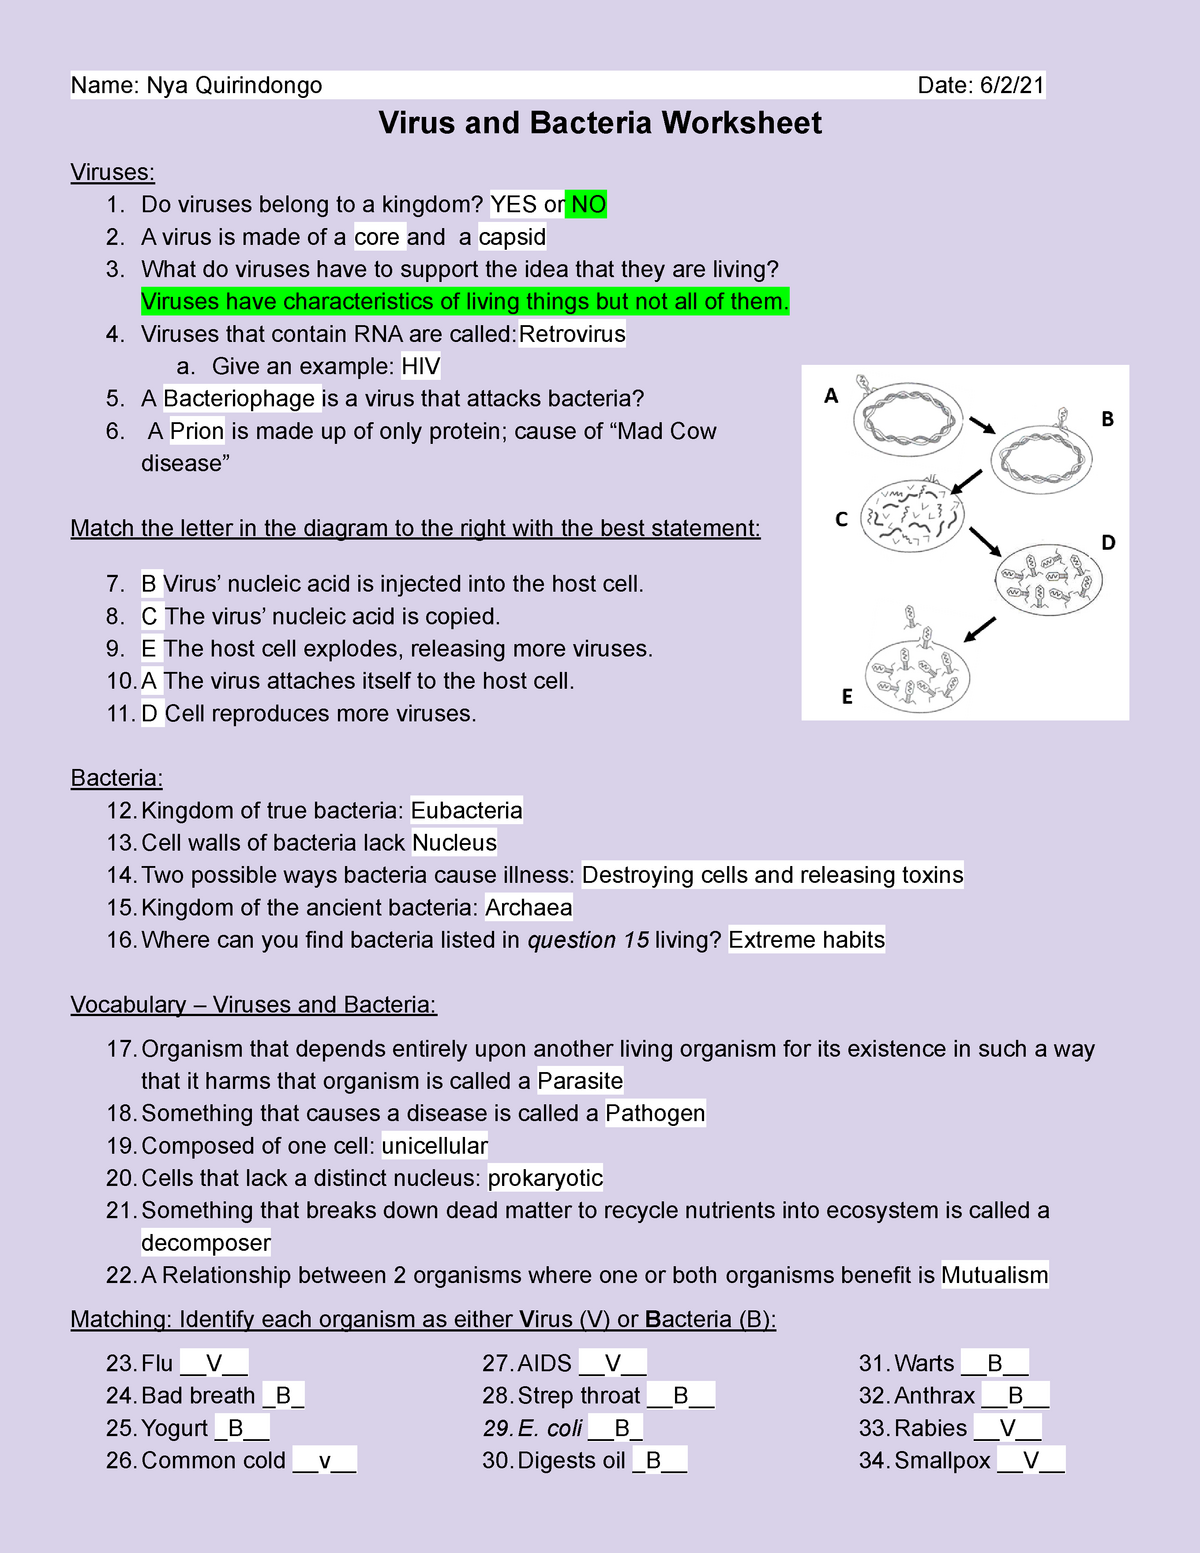 Copy of Virus and Bacteria Worksheet - BIO21 - General Biology Intended For Virus And Bacteria Worksheet